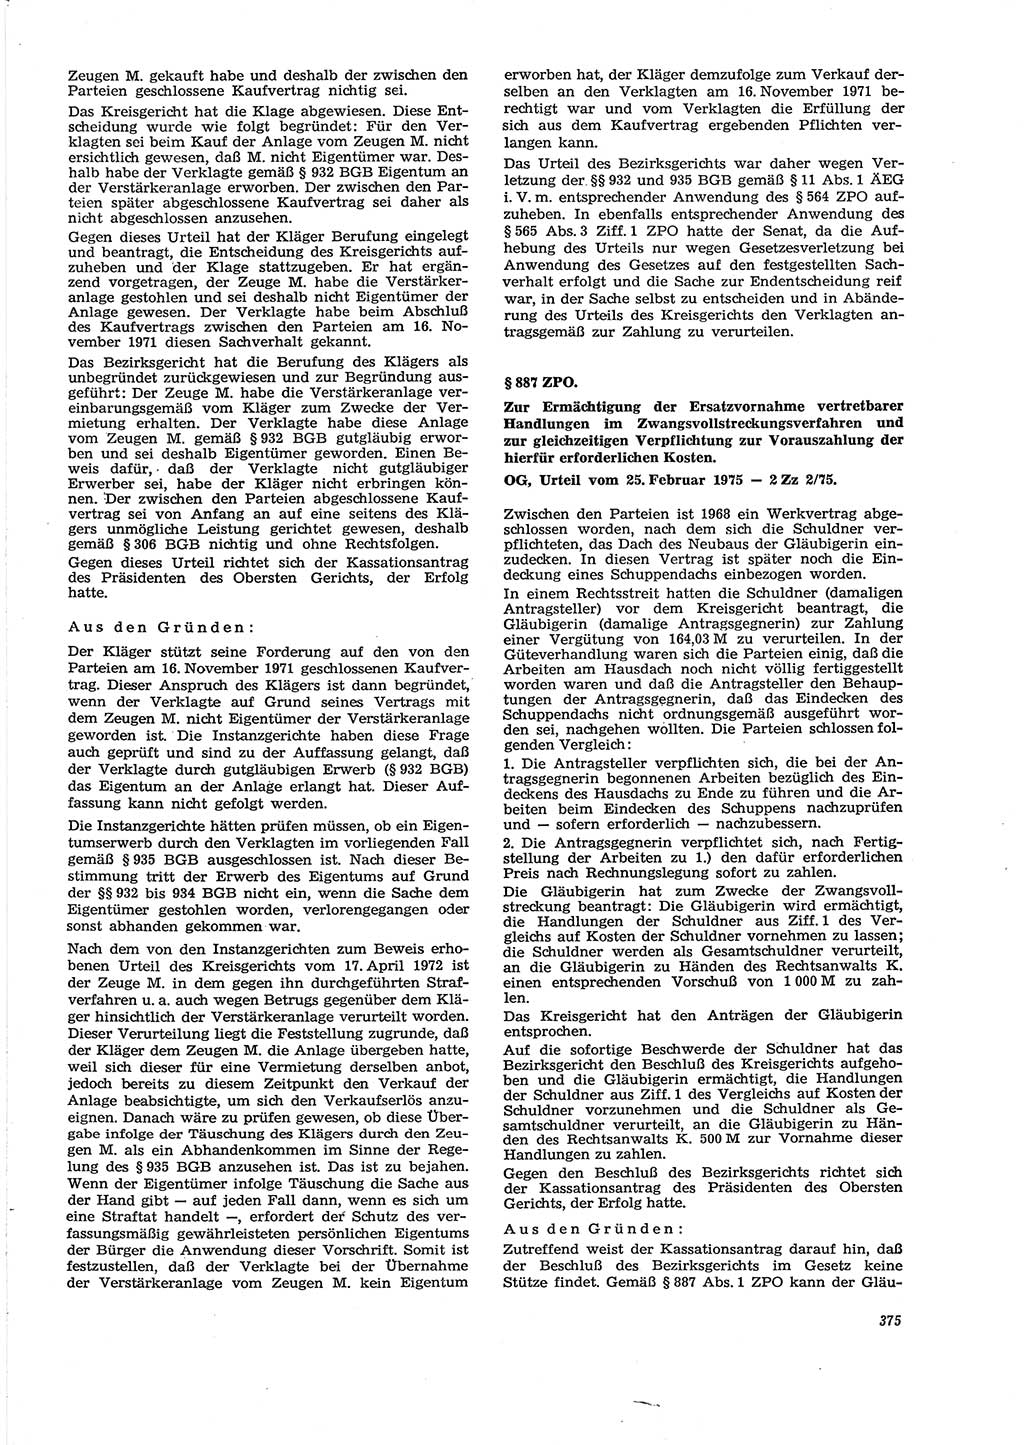 Neue Justiz (NJ), Zeitschrift für Recht und Rechtswissenschaft [Deutsche Demokratische Republik (DDR)], 29. Jahrgang 1975, Seite 375 (NJ DDR 1975, S. 375)